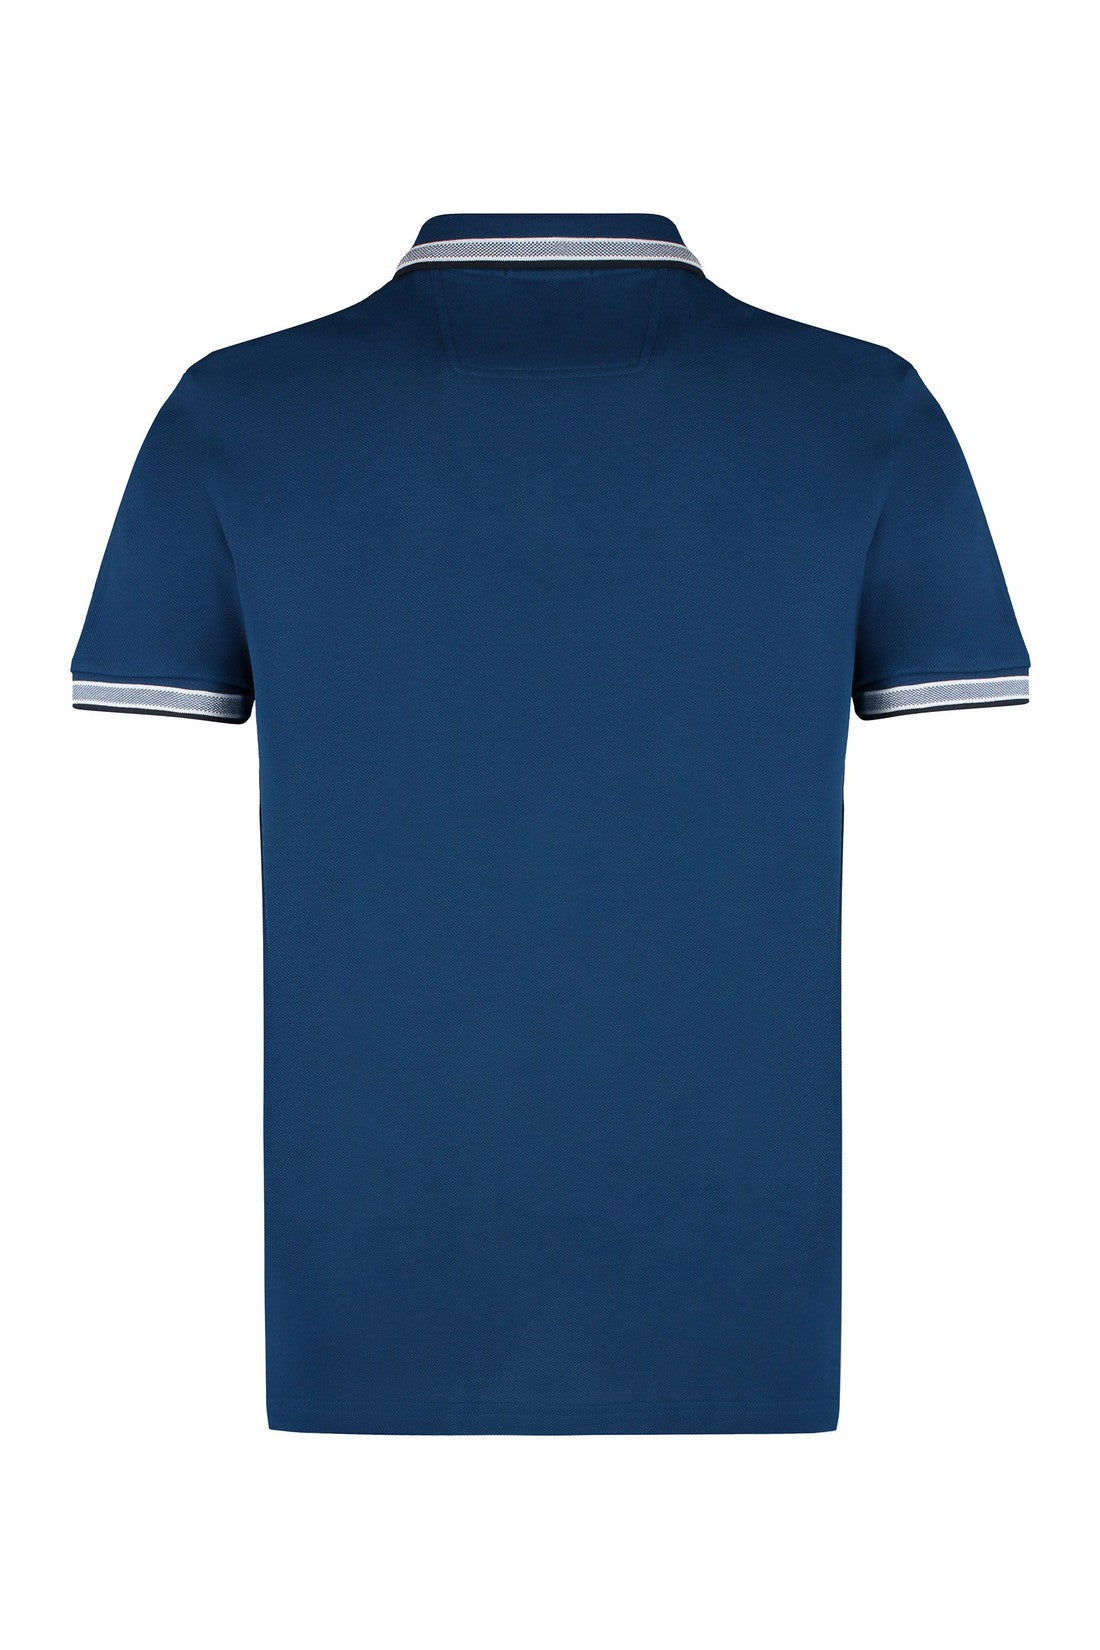 BOSS-OUTLET-SALE-Short sleeve cotton pique polo shirt-ARCHIVIST